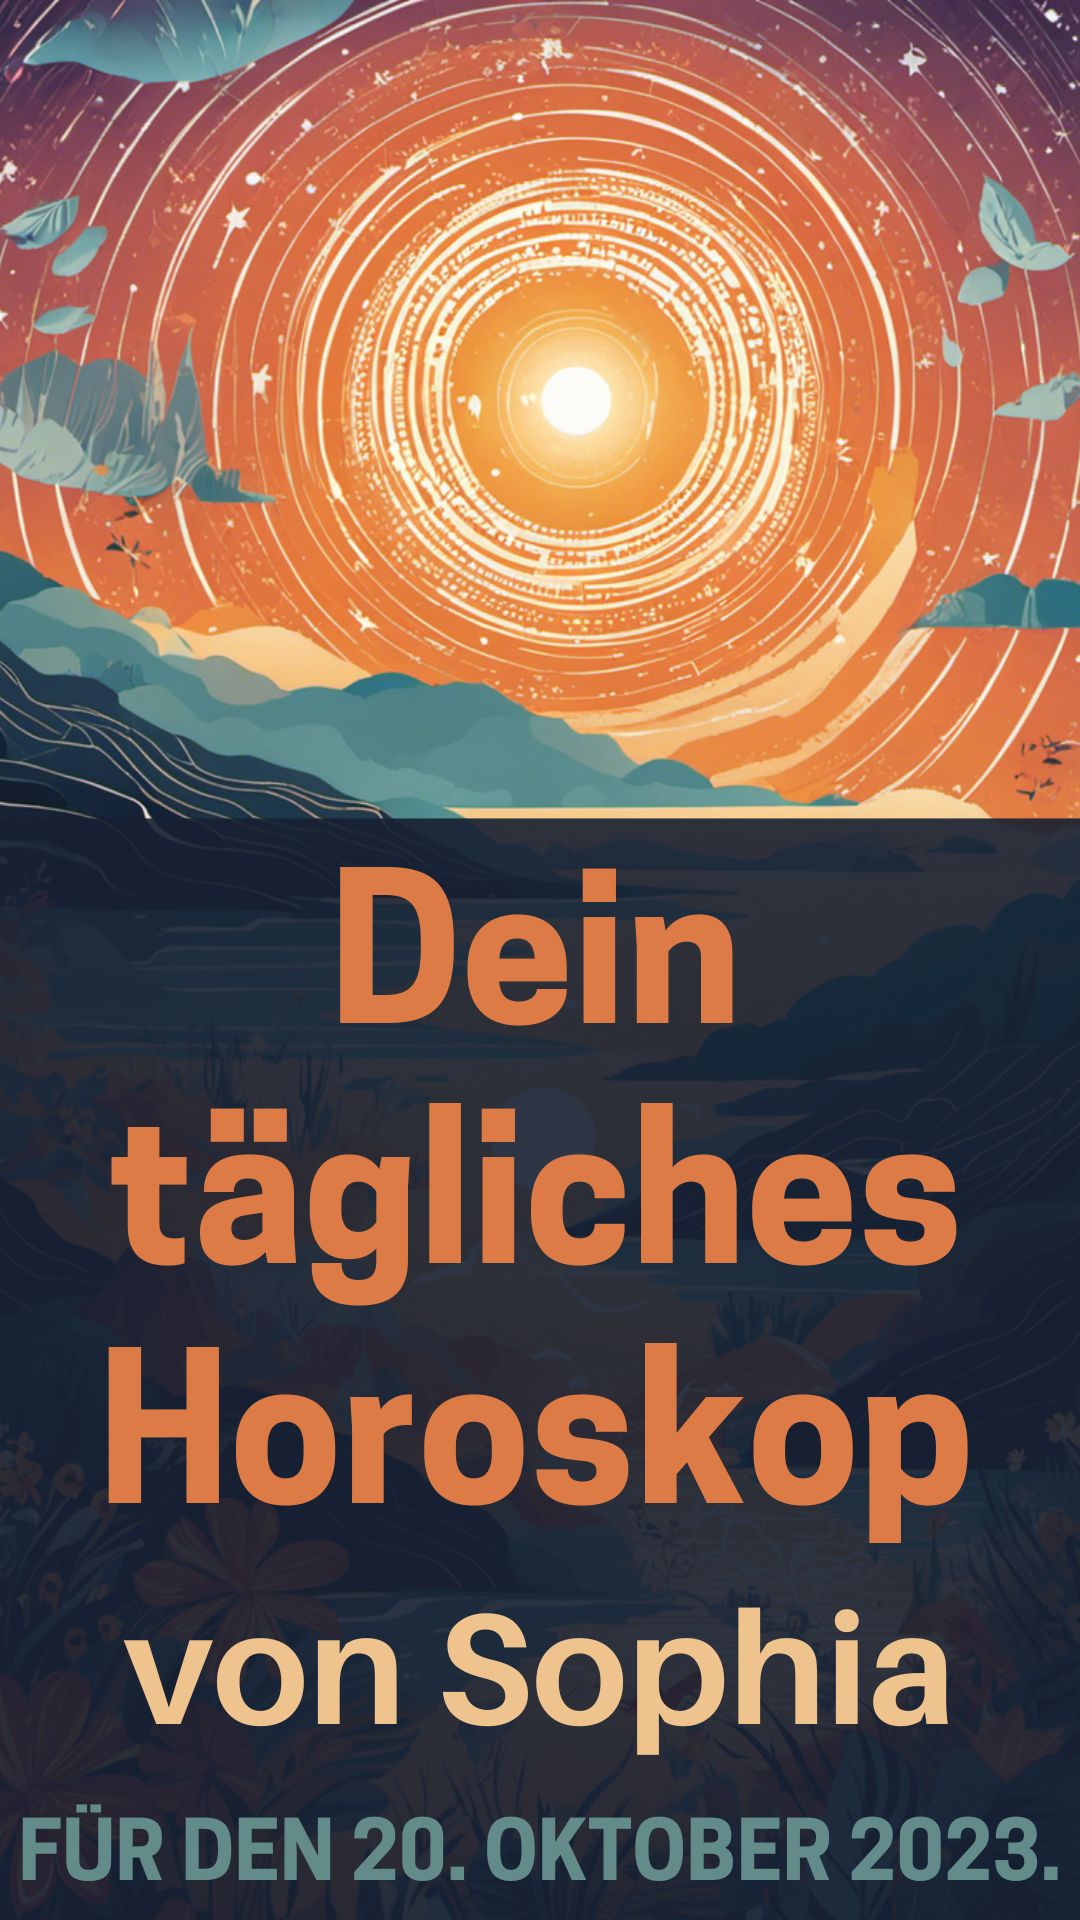 Dein-taegliches-Horoskop-von-Sophia-fuer-den-20.-Oktober-2023